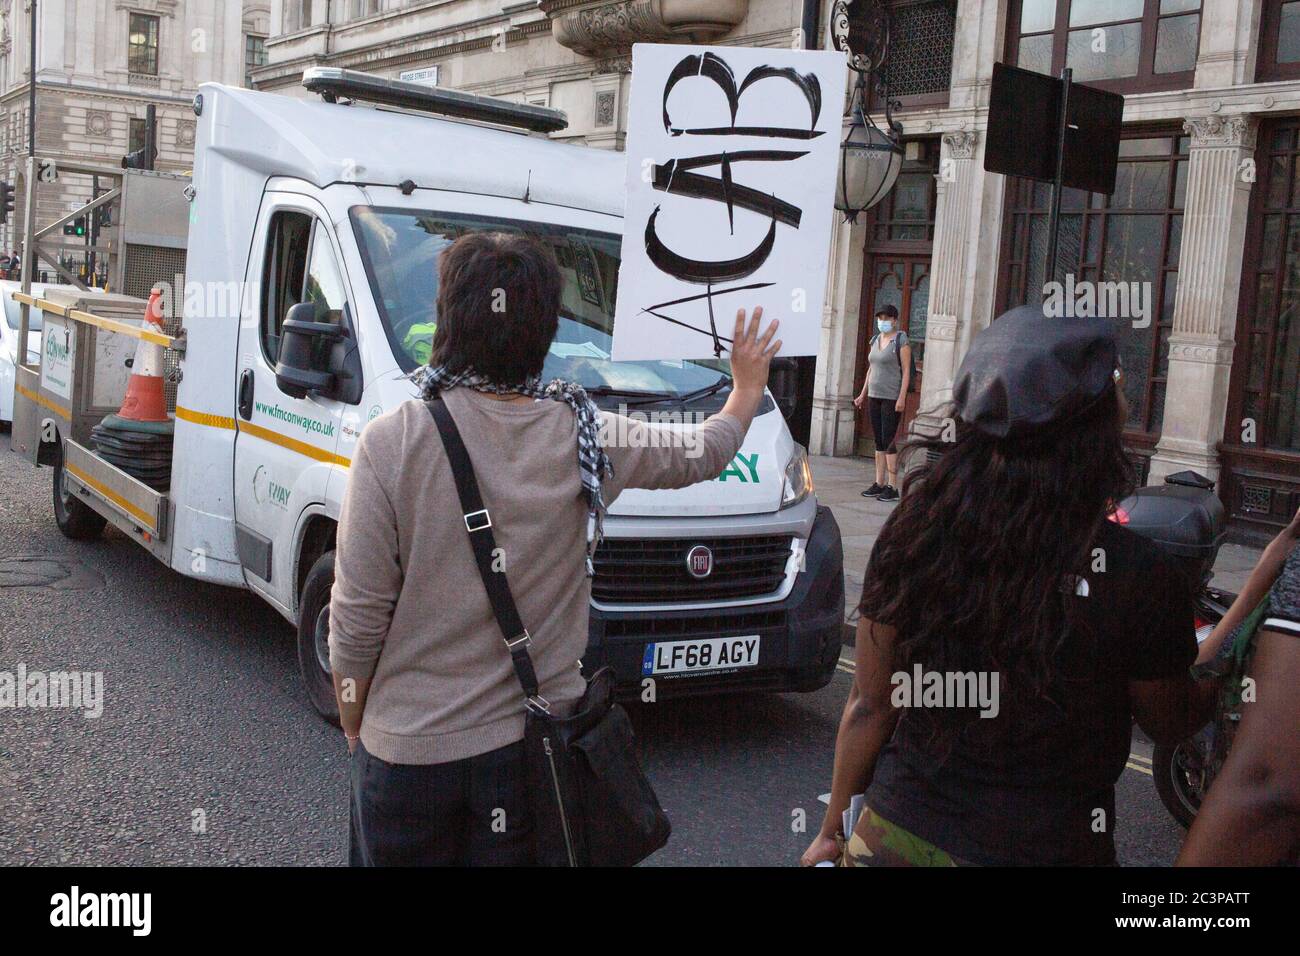 Londres Royaume-Uni 21 juin 2020 UN homme conduit dans Black Lives Matter manifestants blessant une personne. Il a été arrêté près des lieux après avoir été arrêté par la police. Credit: Thabo Jaiyesimi/Alay Live News Banque D'Images